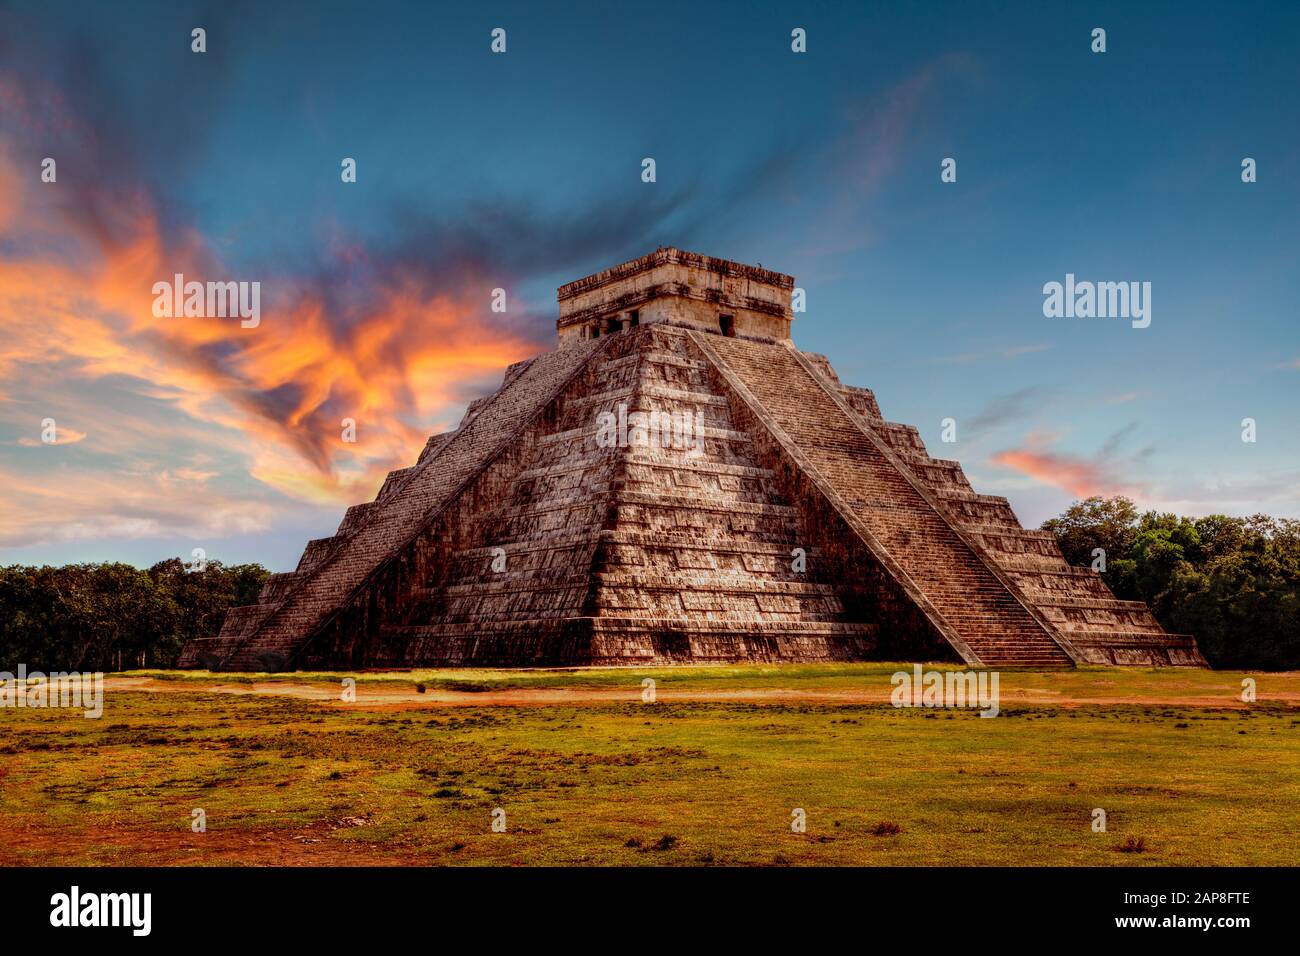 Sonnenuntergang über der Kukulcan Pyramide in Chichen Itza, Mexiko, den größten archäologischen Städten der präkolumbischen Maya-Zivilisation in der Yucatan Peninsul Stockfoto